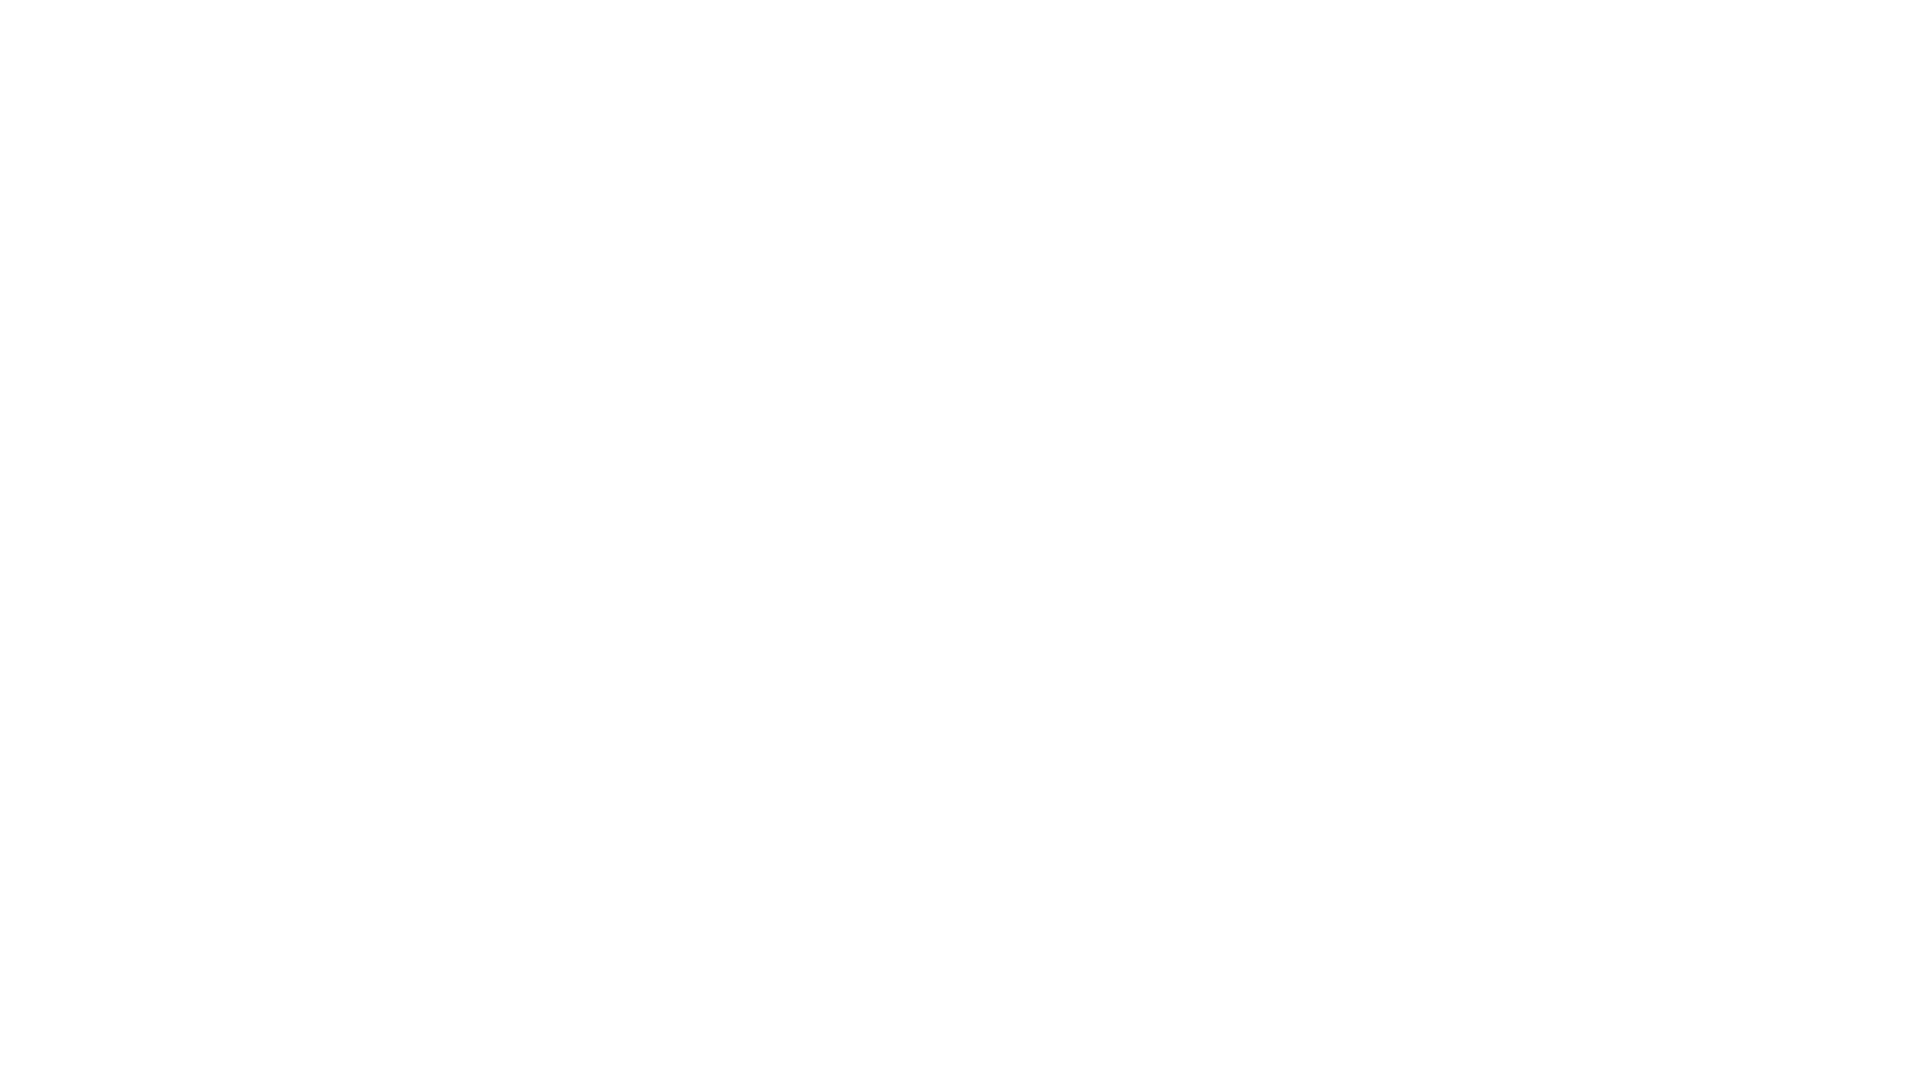 White ENO logo on pink zoom background